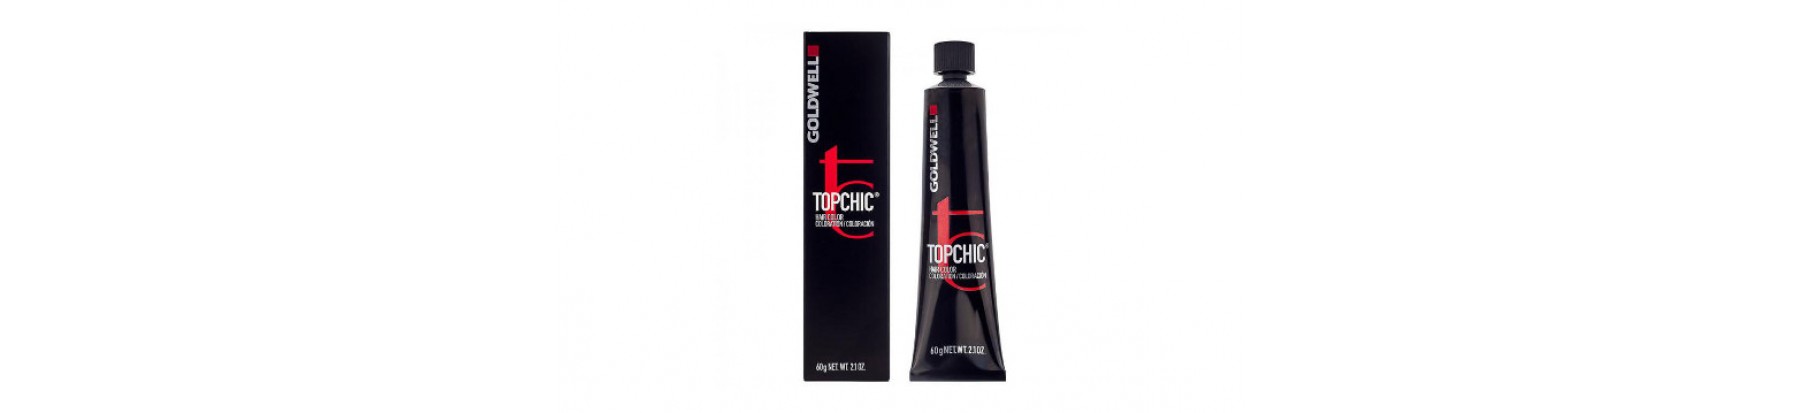 TOPCHIC – стойкая краска для волос  (тюбики, 60 мл.)